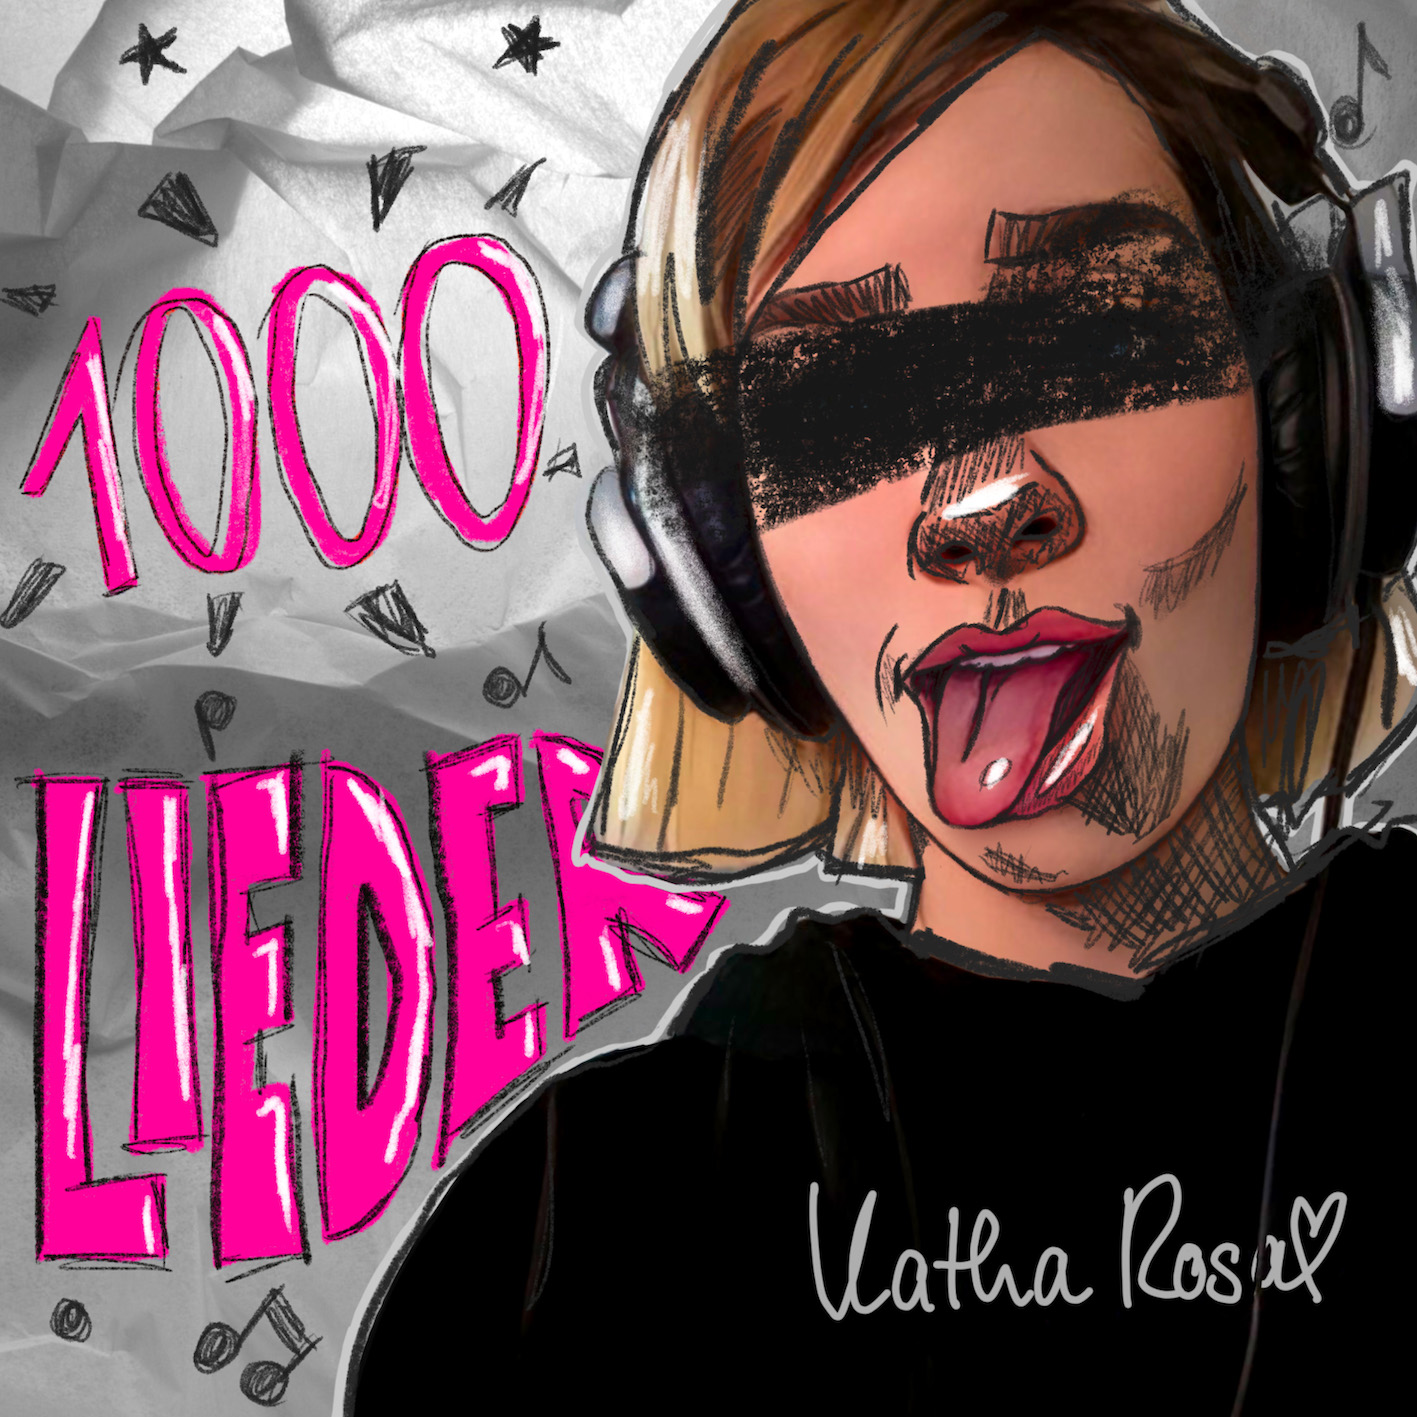 Katha Rosa - 1000 Lieder